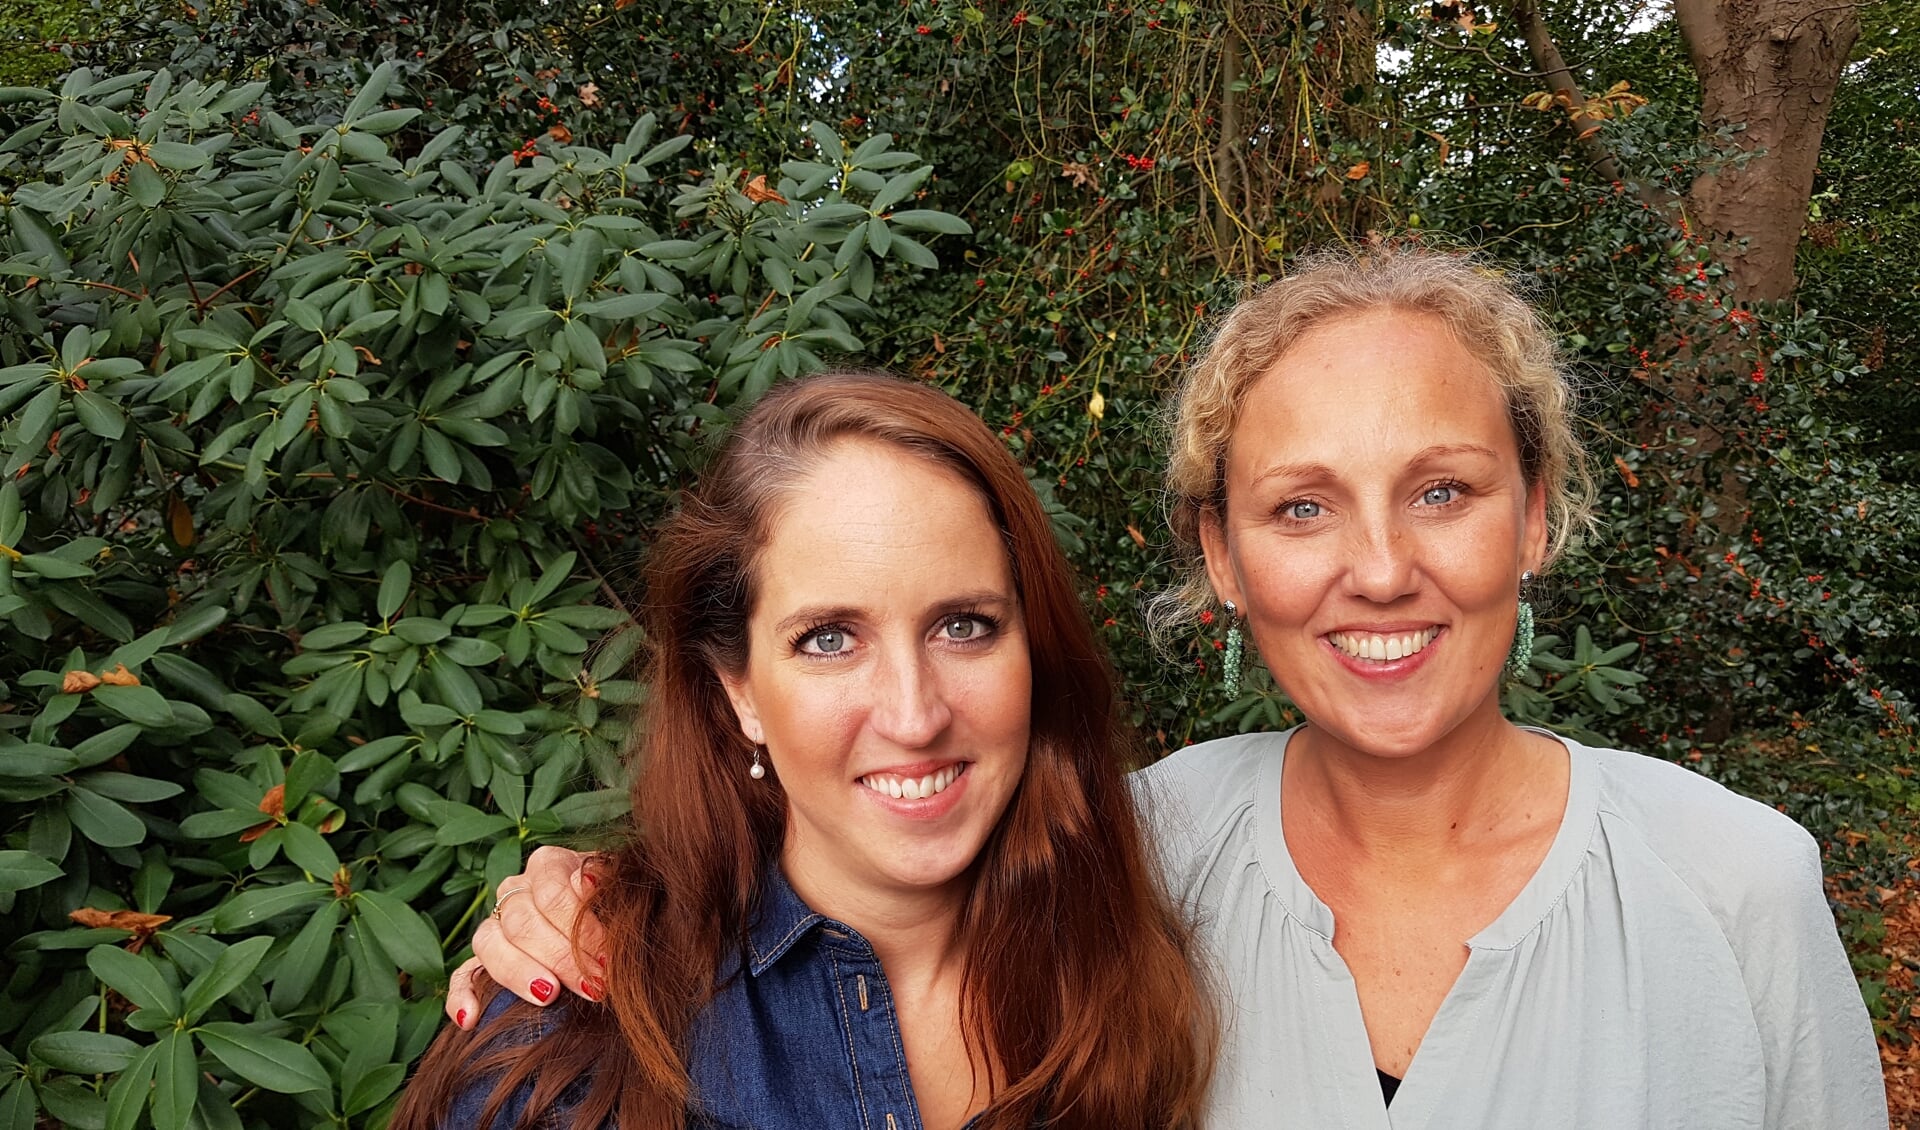 Welzijnsadviseurs Nikki van der Ven en Laura Methorst: “Deelnemers krijgen de kans op een nieuw begin.” | Foto: MV